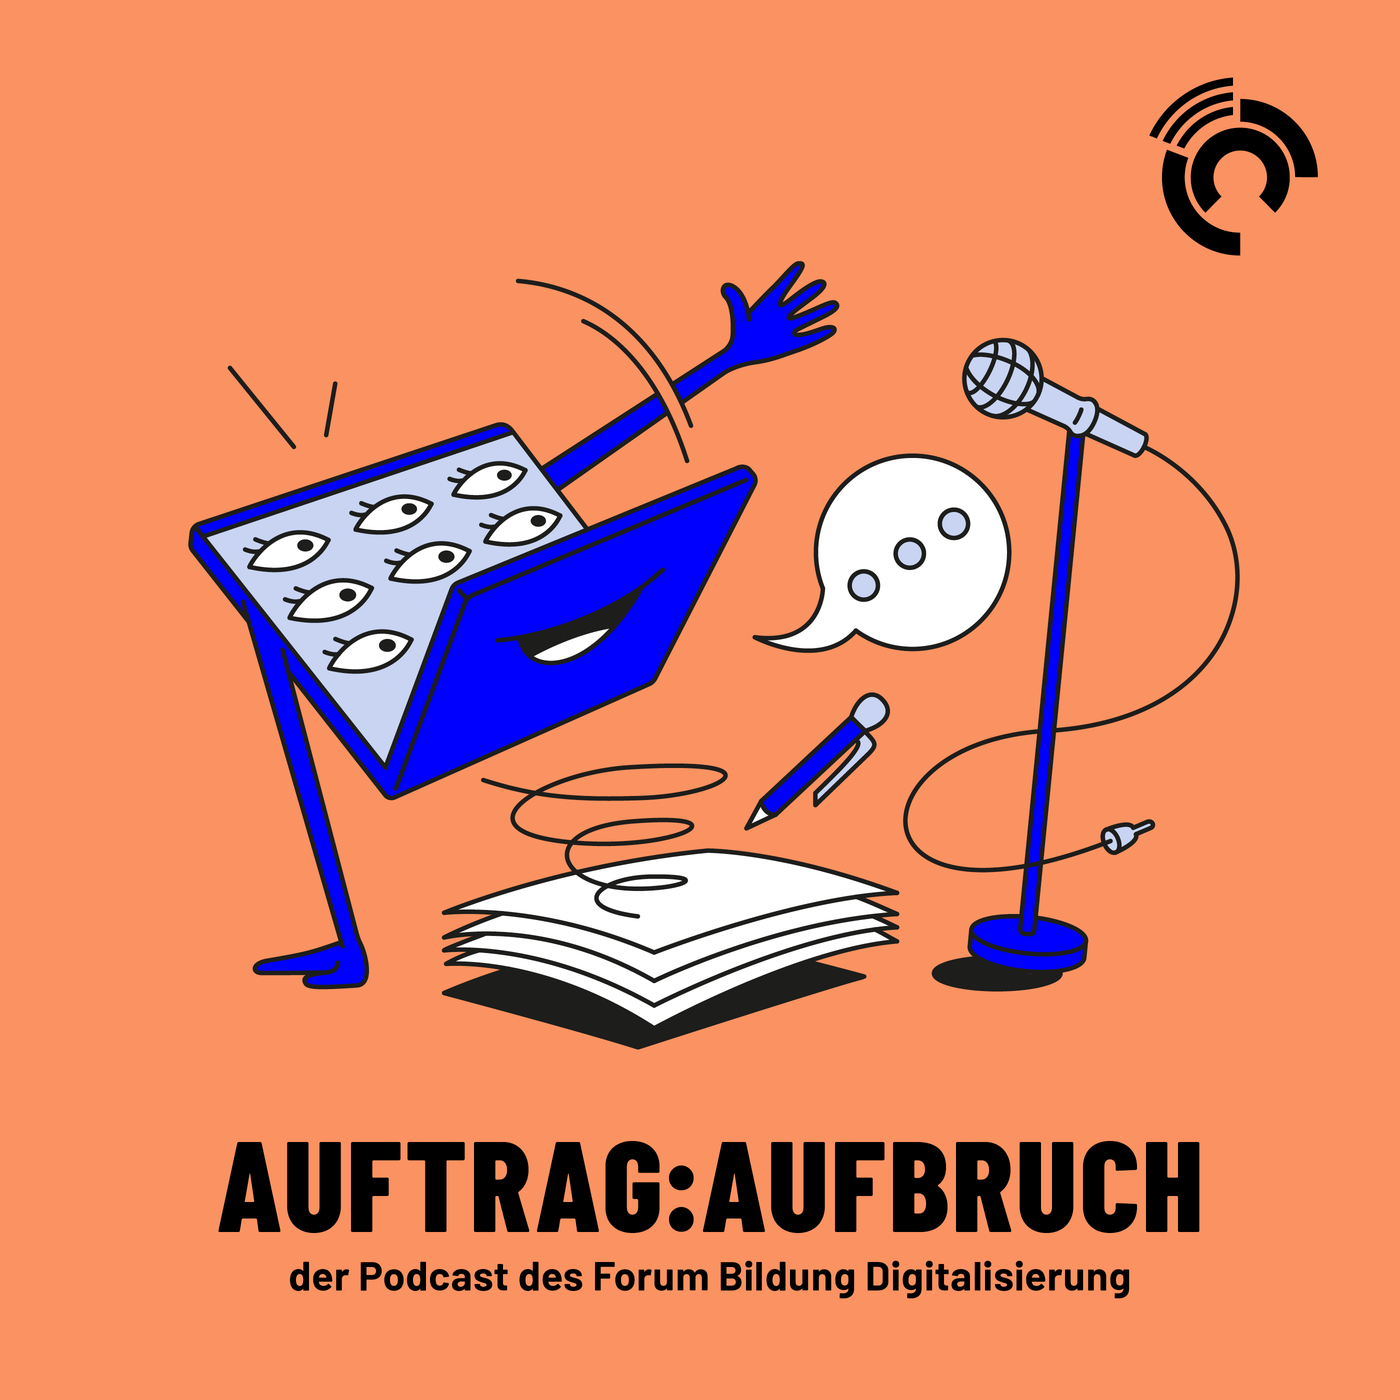 Auftrag:Aufbruch – der Podcast des Forum Bildung Digitalisierung